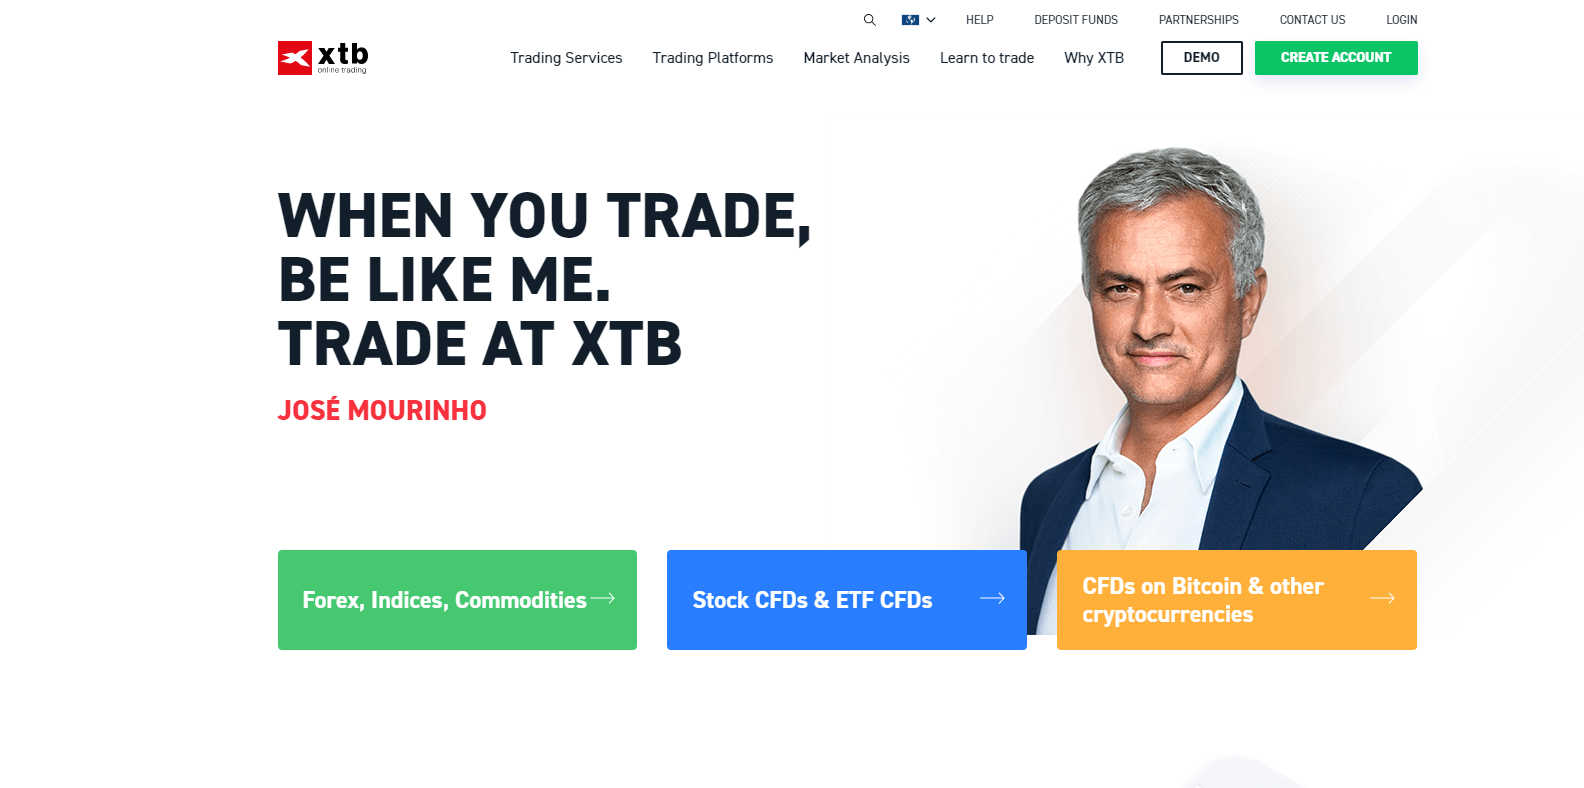 Forex brokeri XTB'nin resmi web sitesi